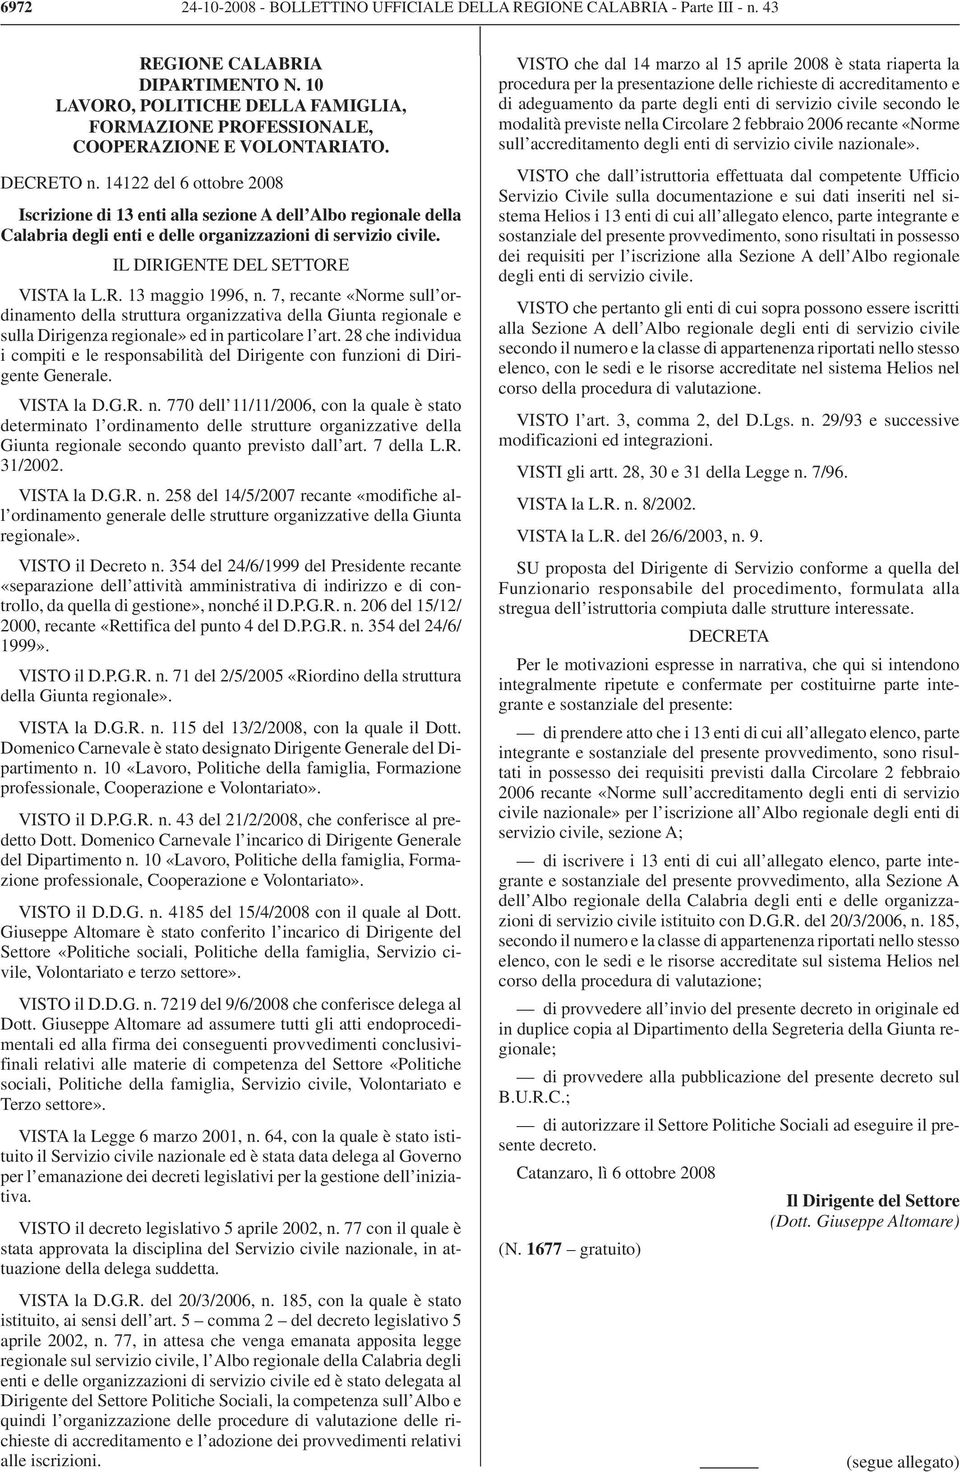 14122 del 6 ottobre 2008 Iscrizione di 13 enti alla sezione A dell Albo regionale della Calabria degli enti e delle organizzazioni di servizio civile. IL DIRIGENTE DEL SETTORE VISTA la L.R. 13 maggio 1996, n.